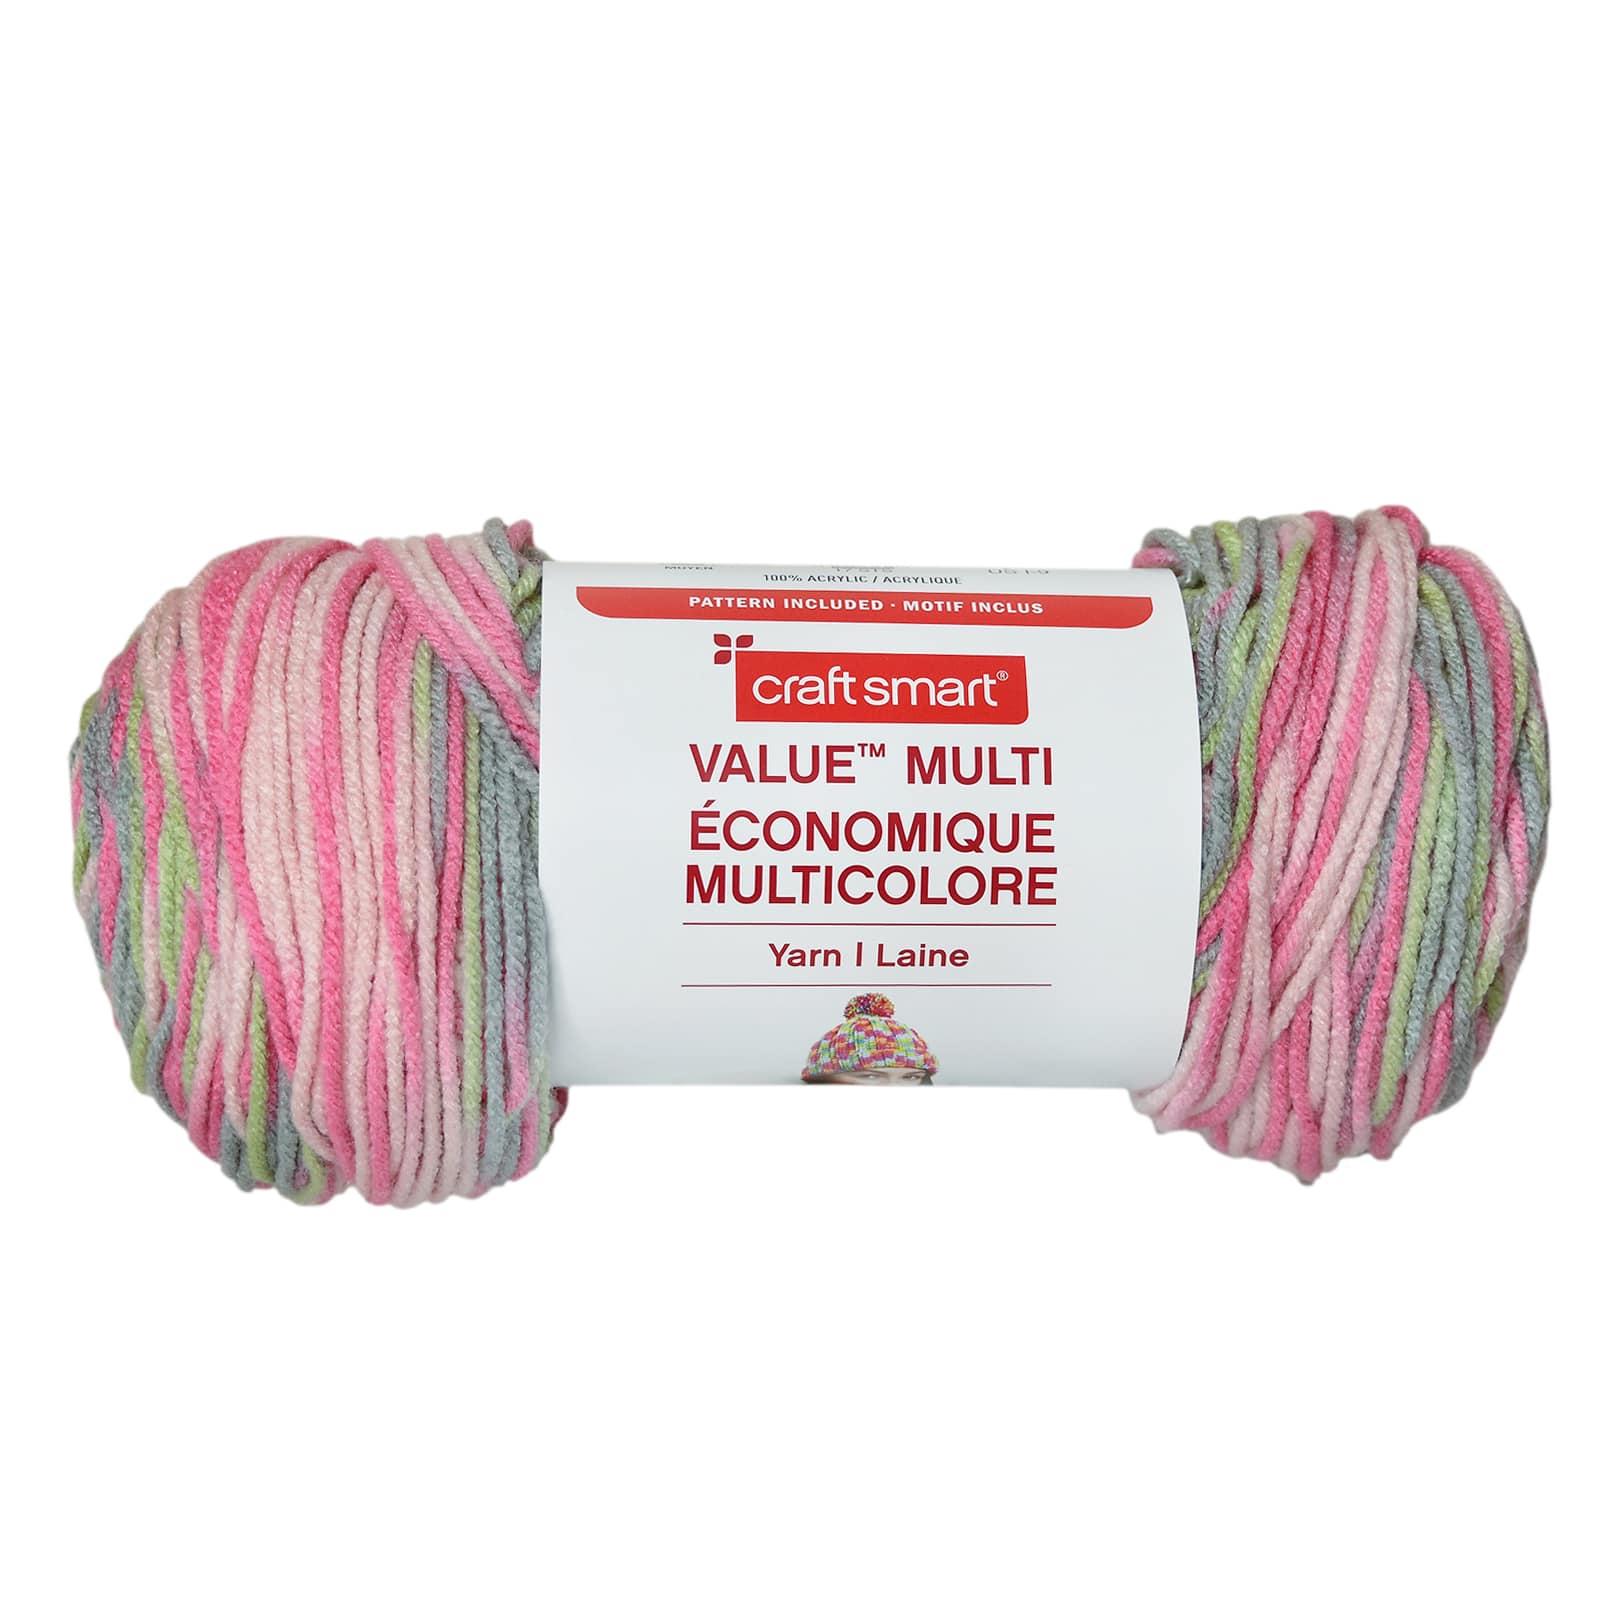 1roll Elastane Yarn, Minimalist Clear Thread For Crafts